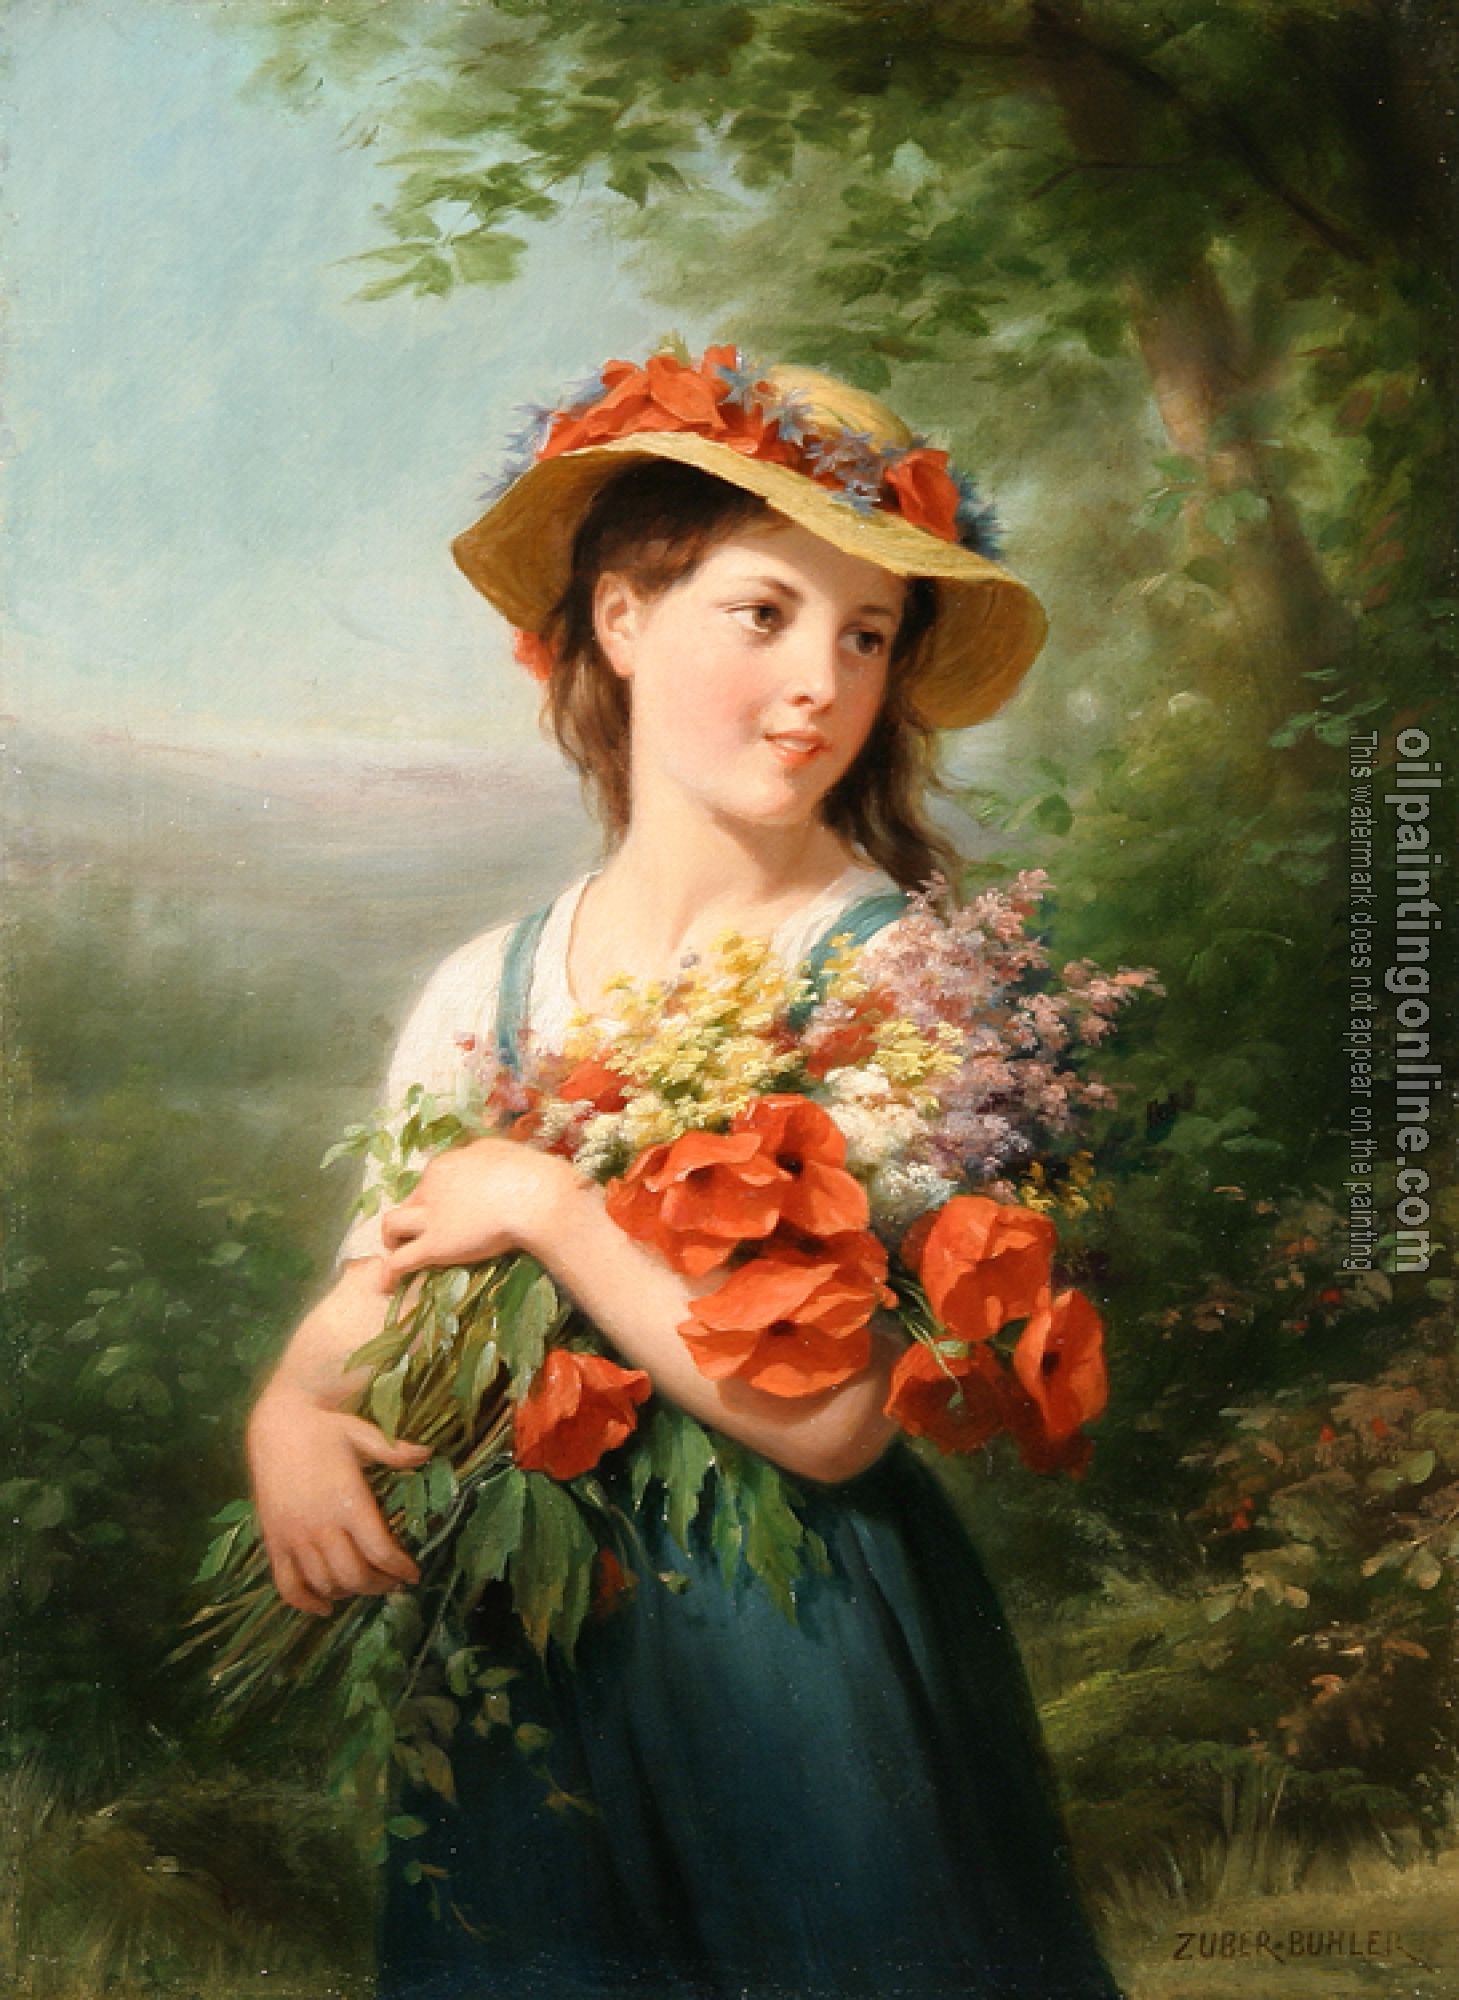 Zuber-Buhler, Fritz - Jeune Fille au Bouquet de Fleurs des Champs